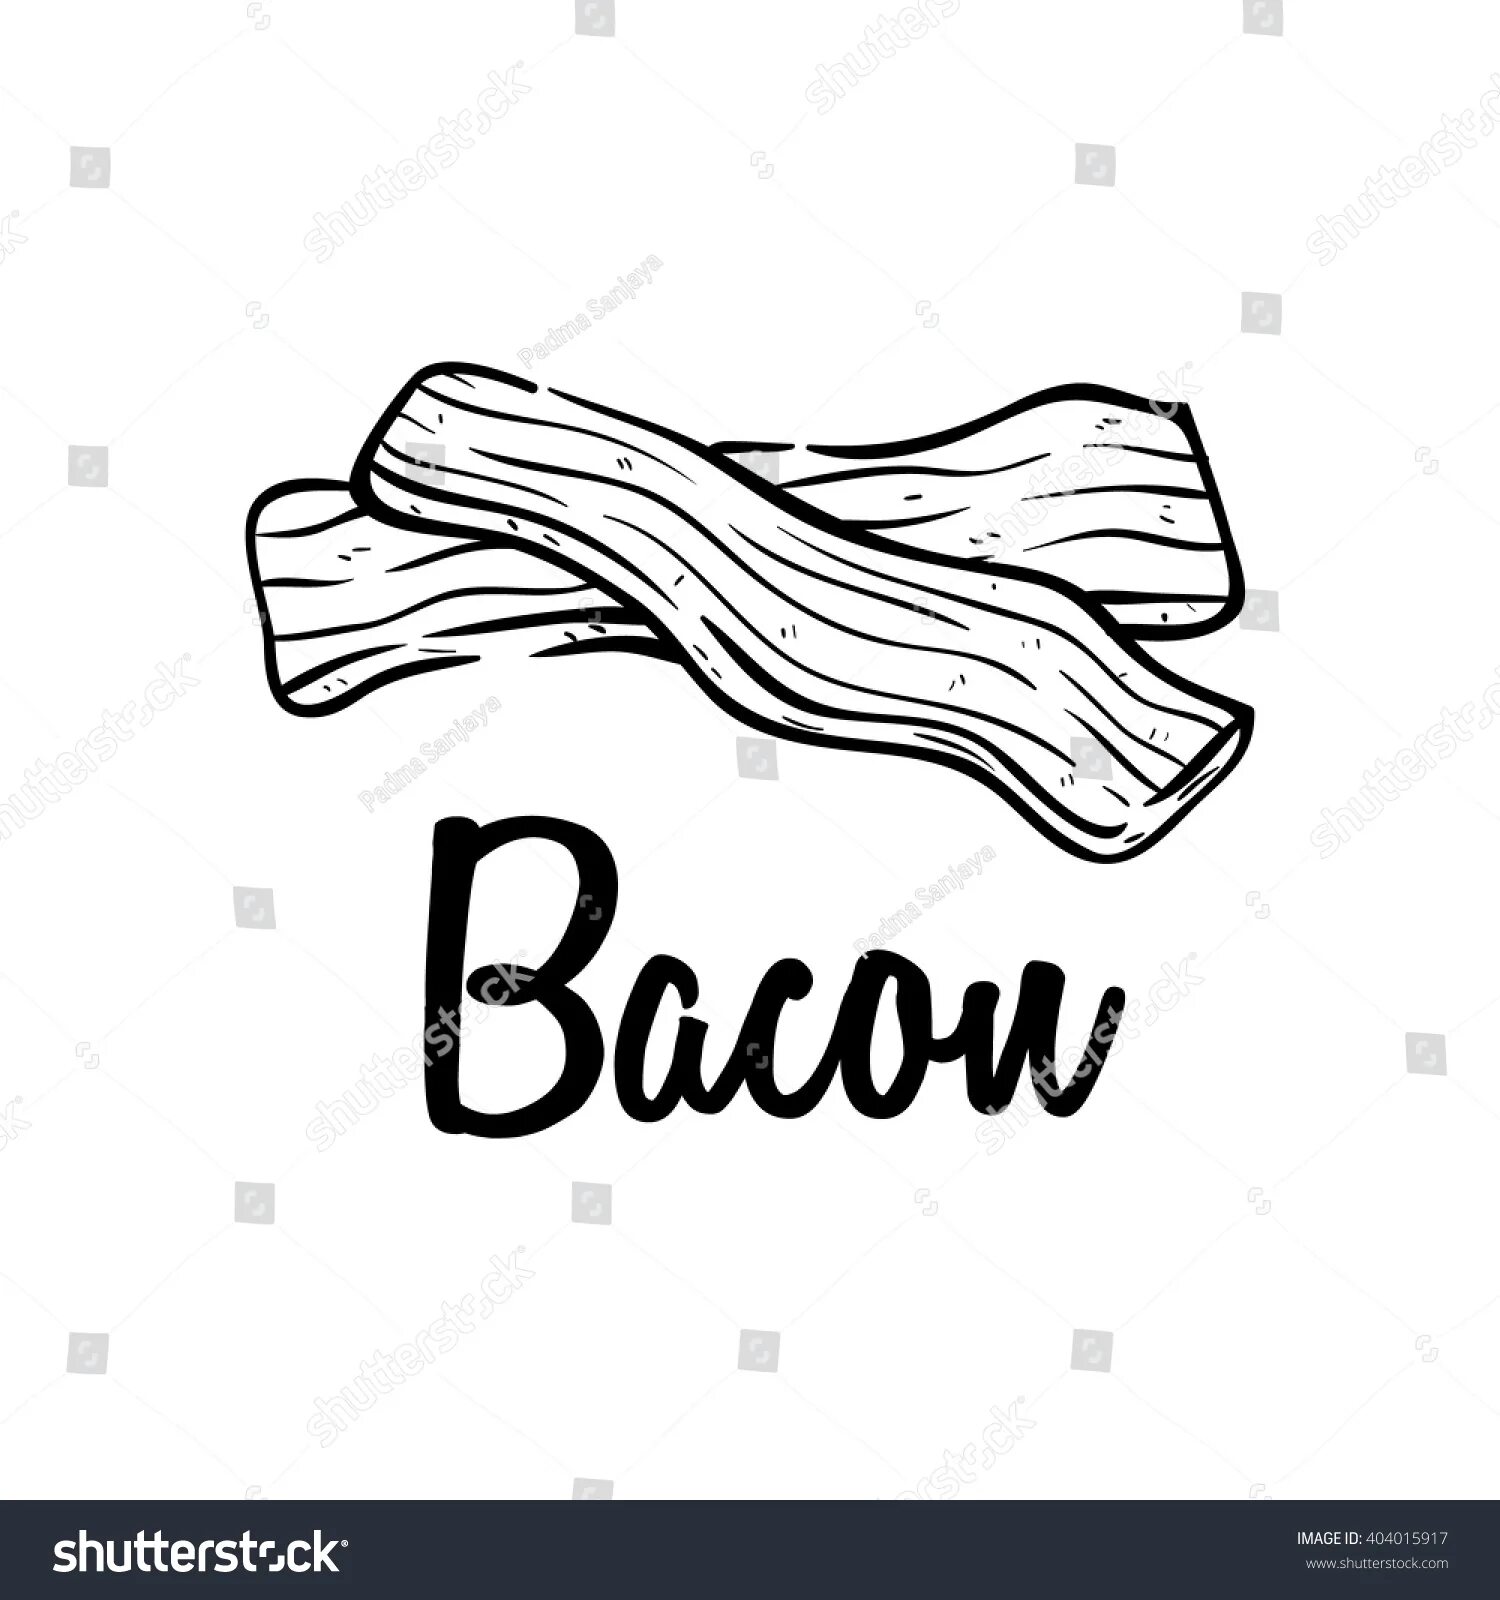 Creative bacon coloring book